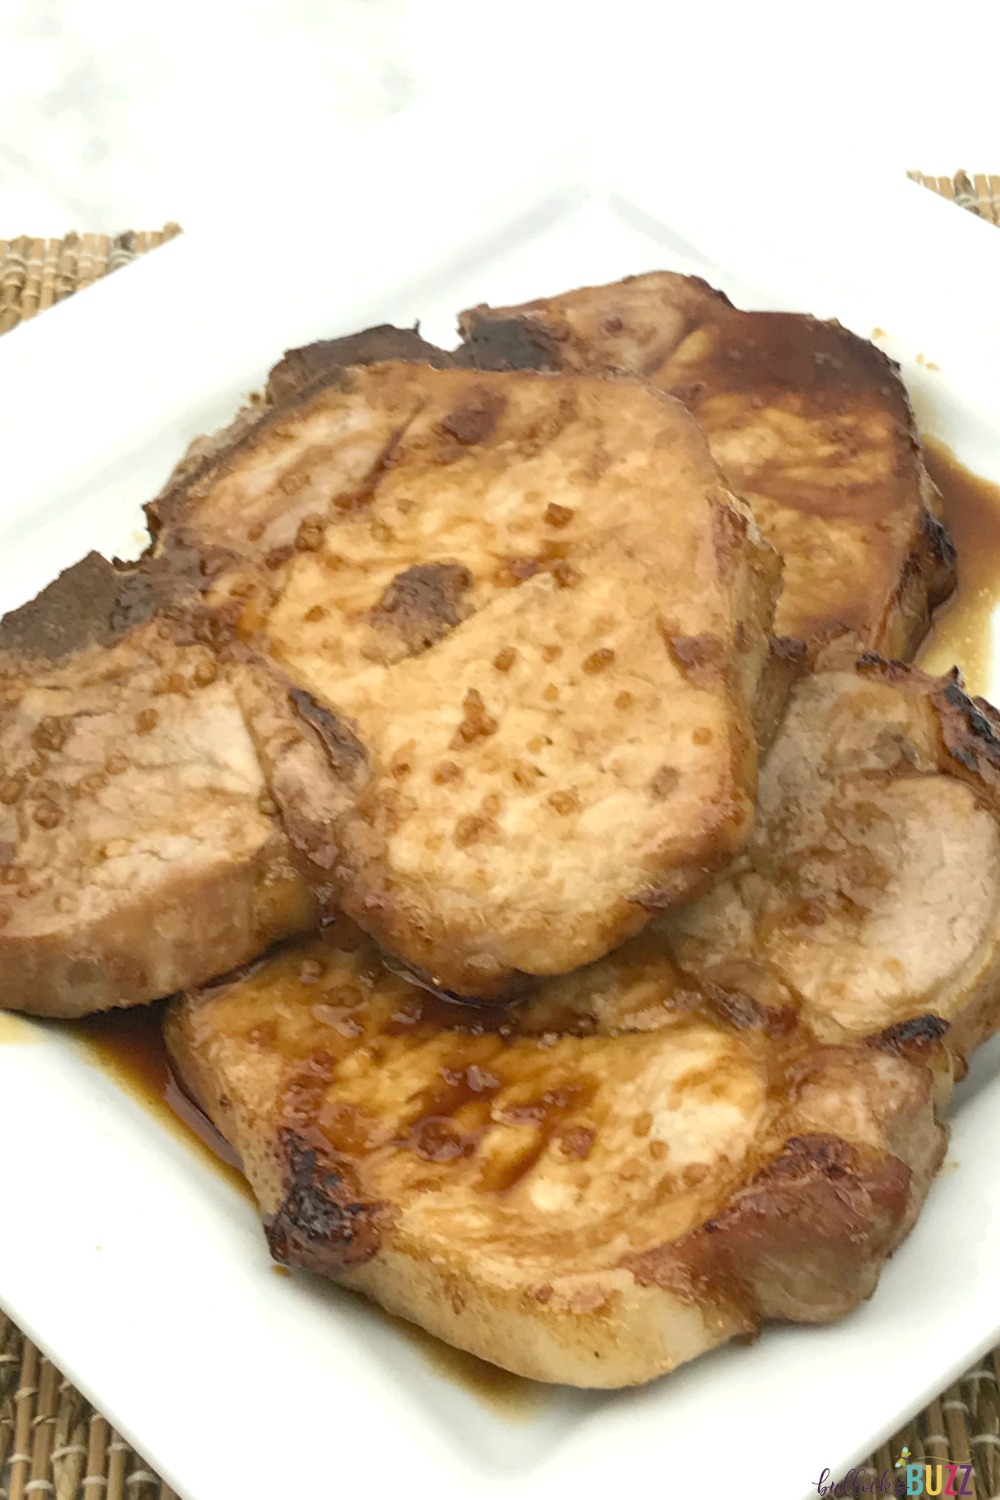 Asian Marinated Pork Chops - Recipe - Bullock's Buzz